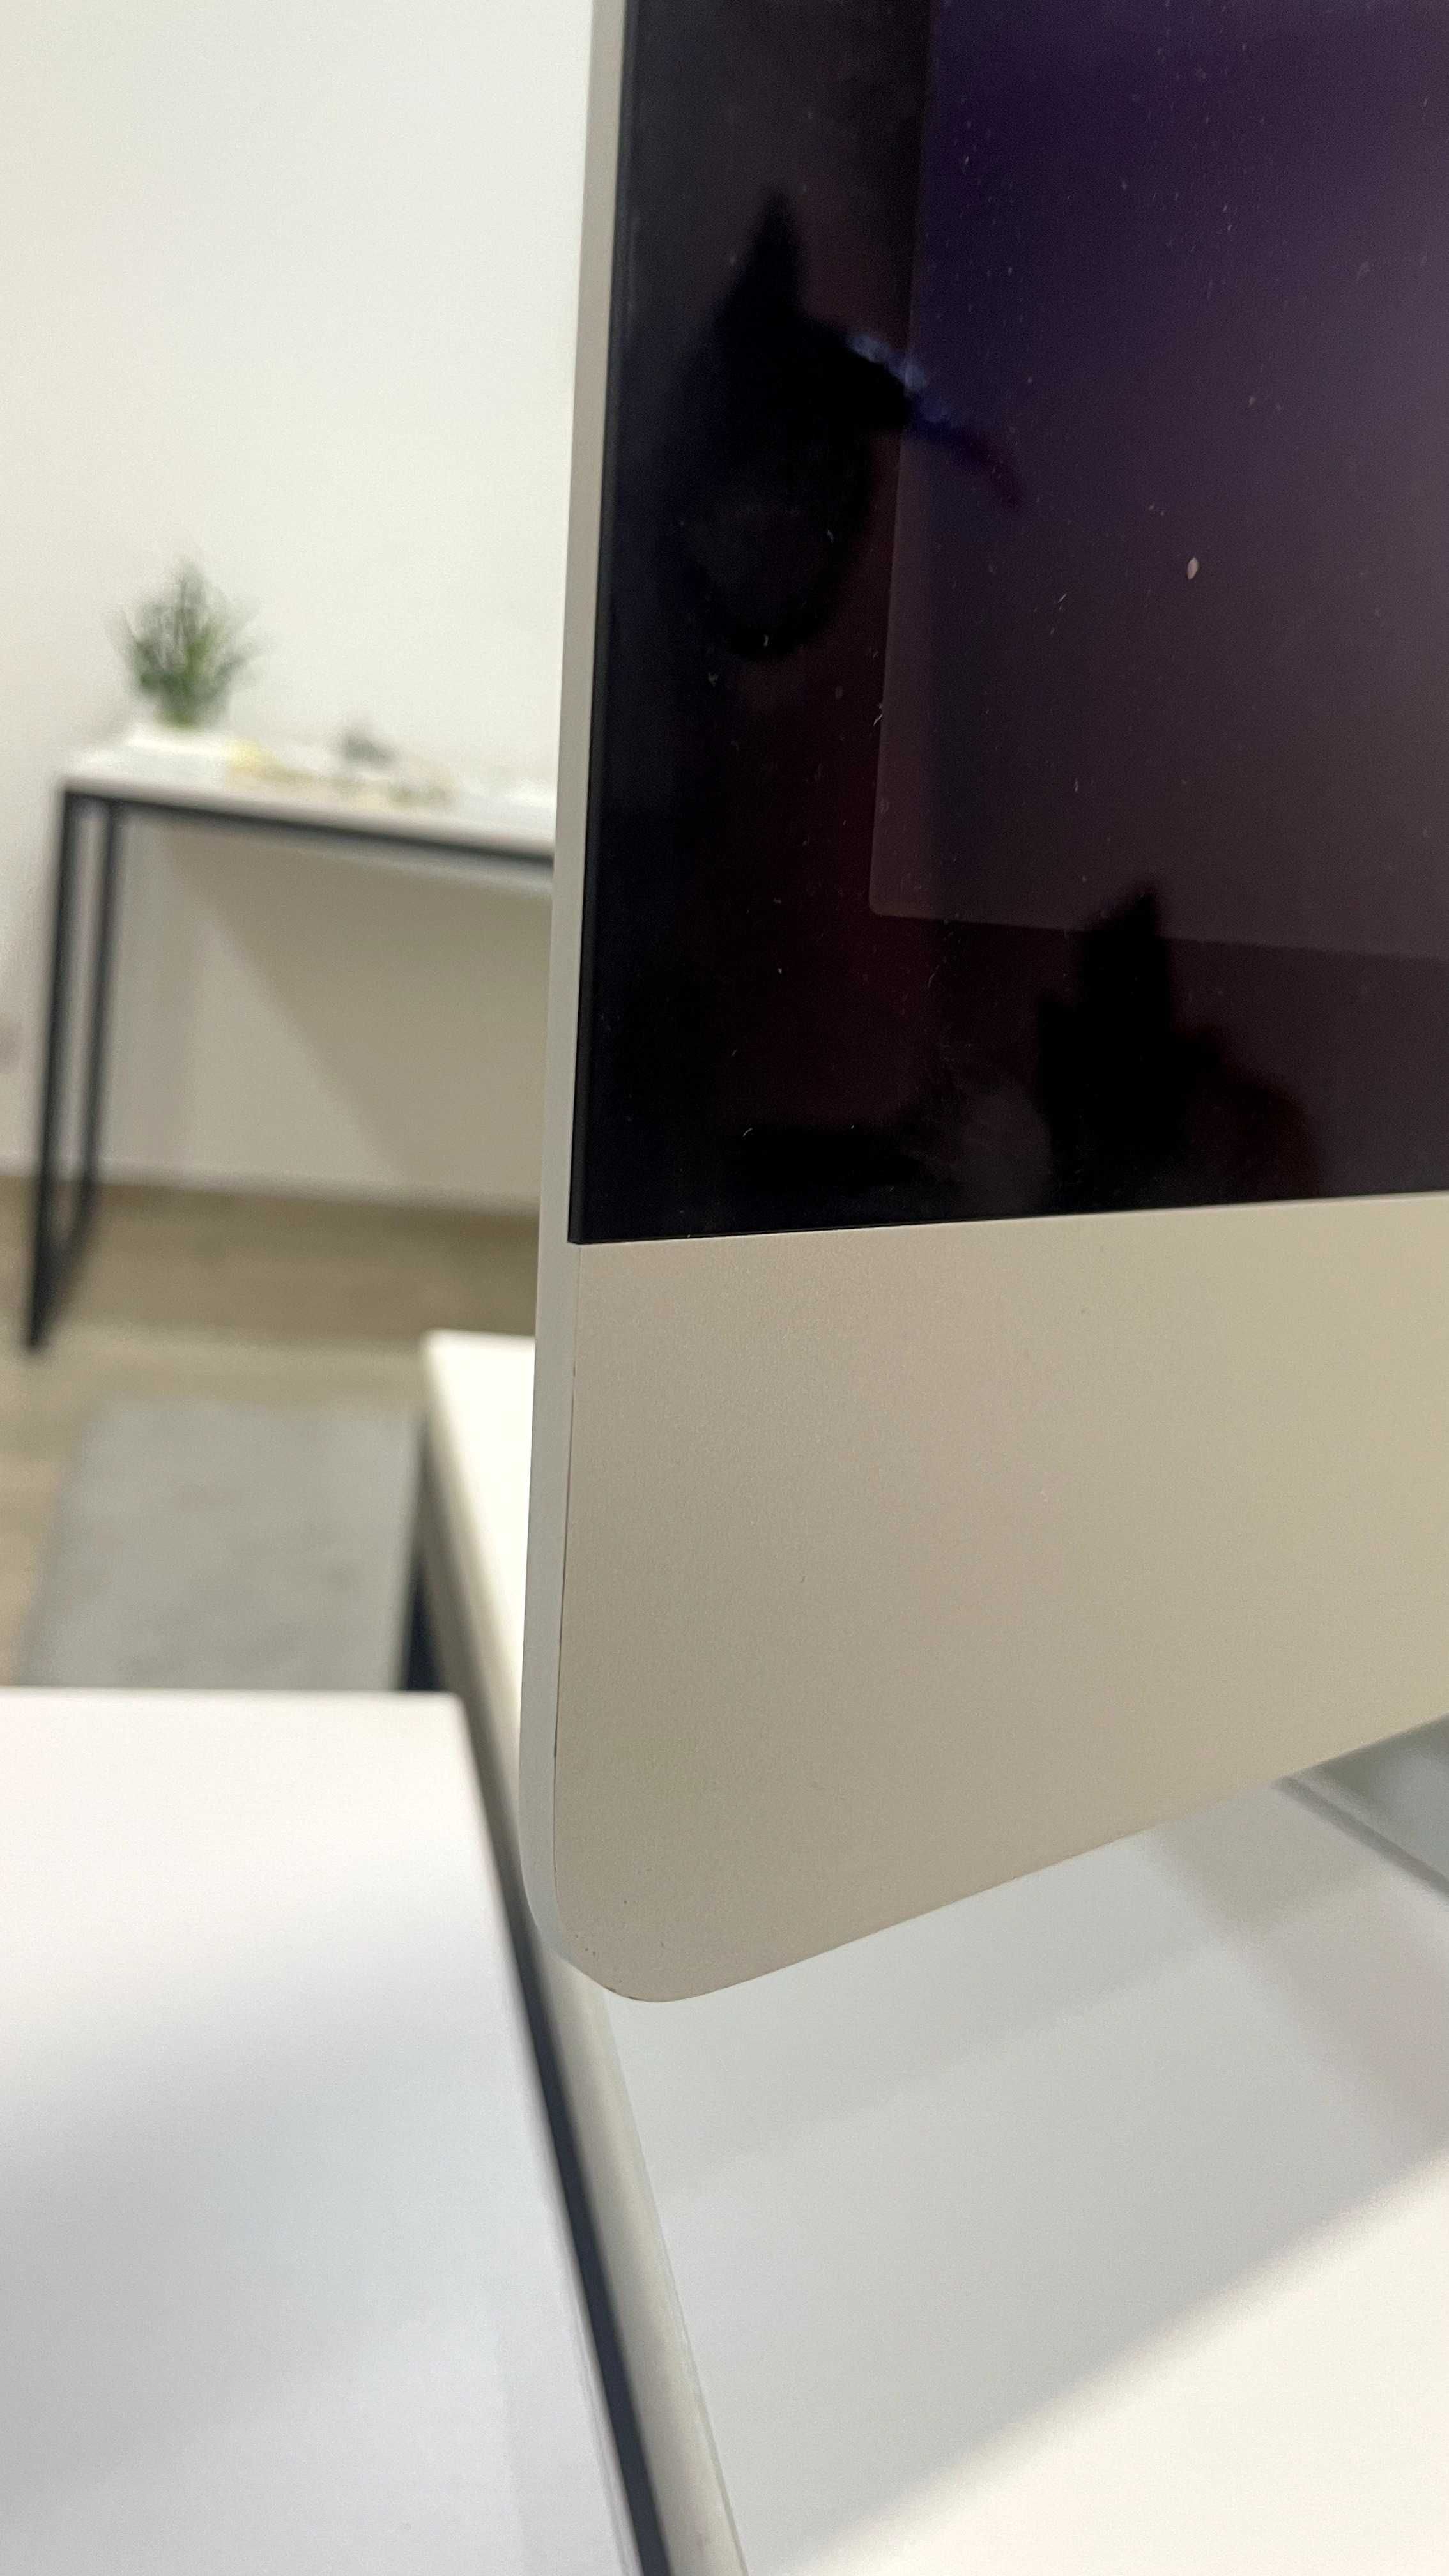 iMac 27-inch 2017